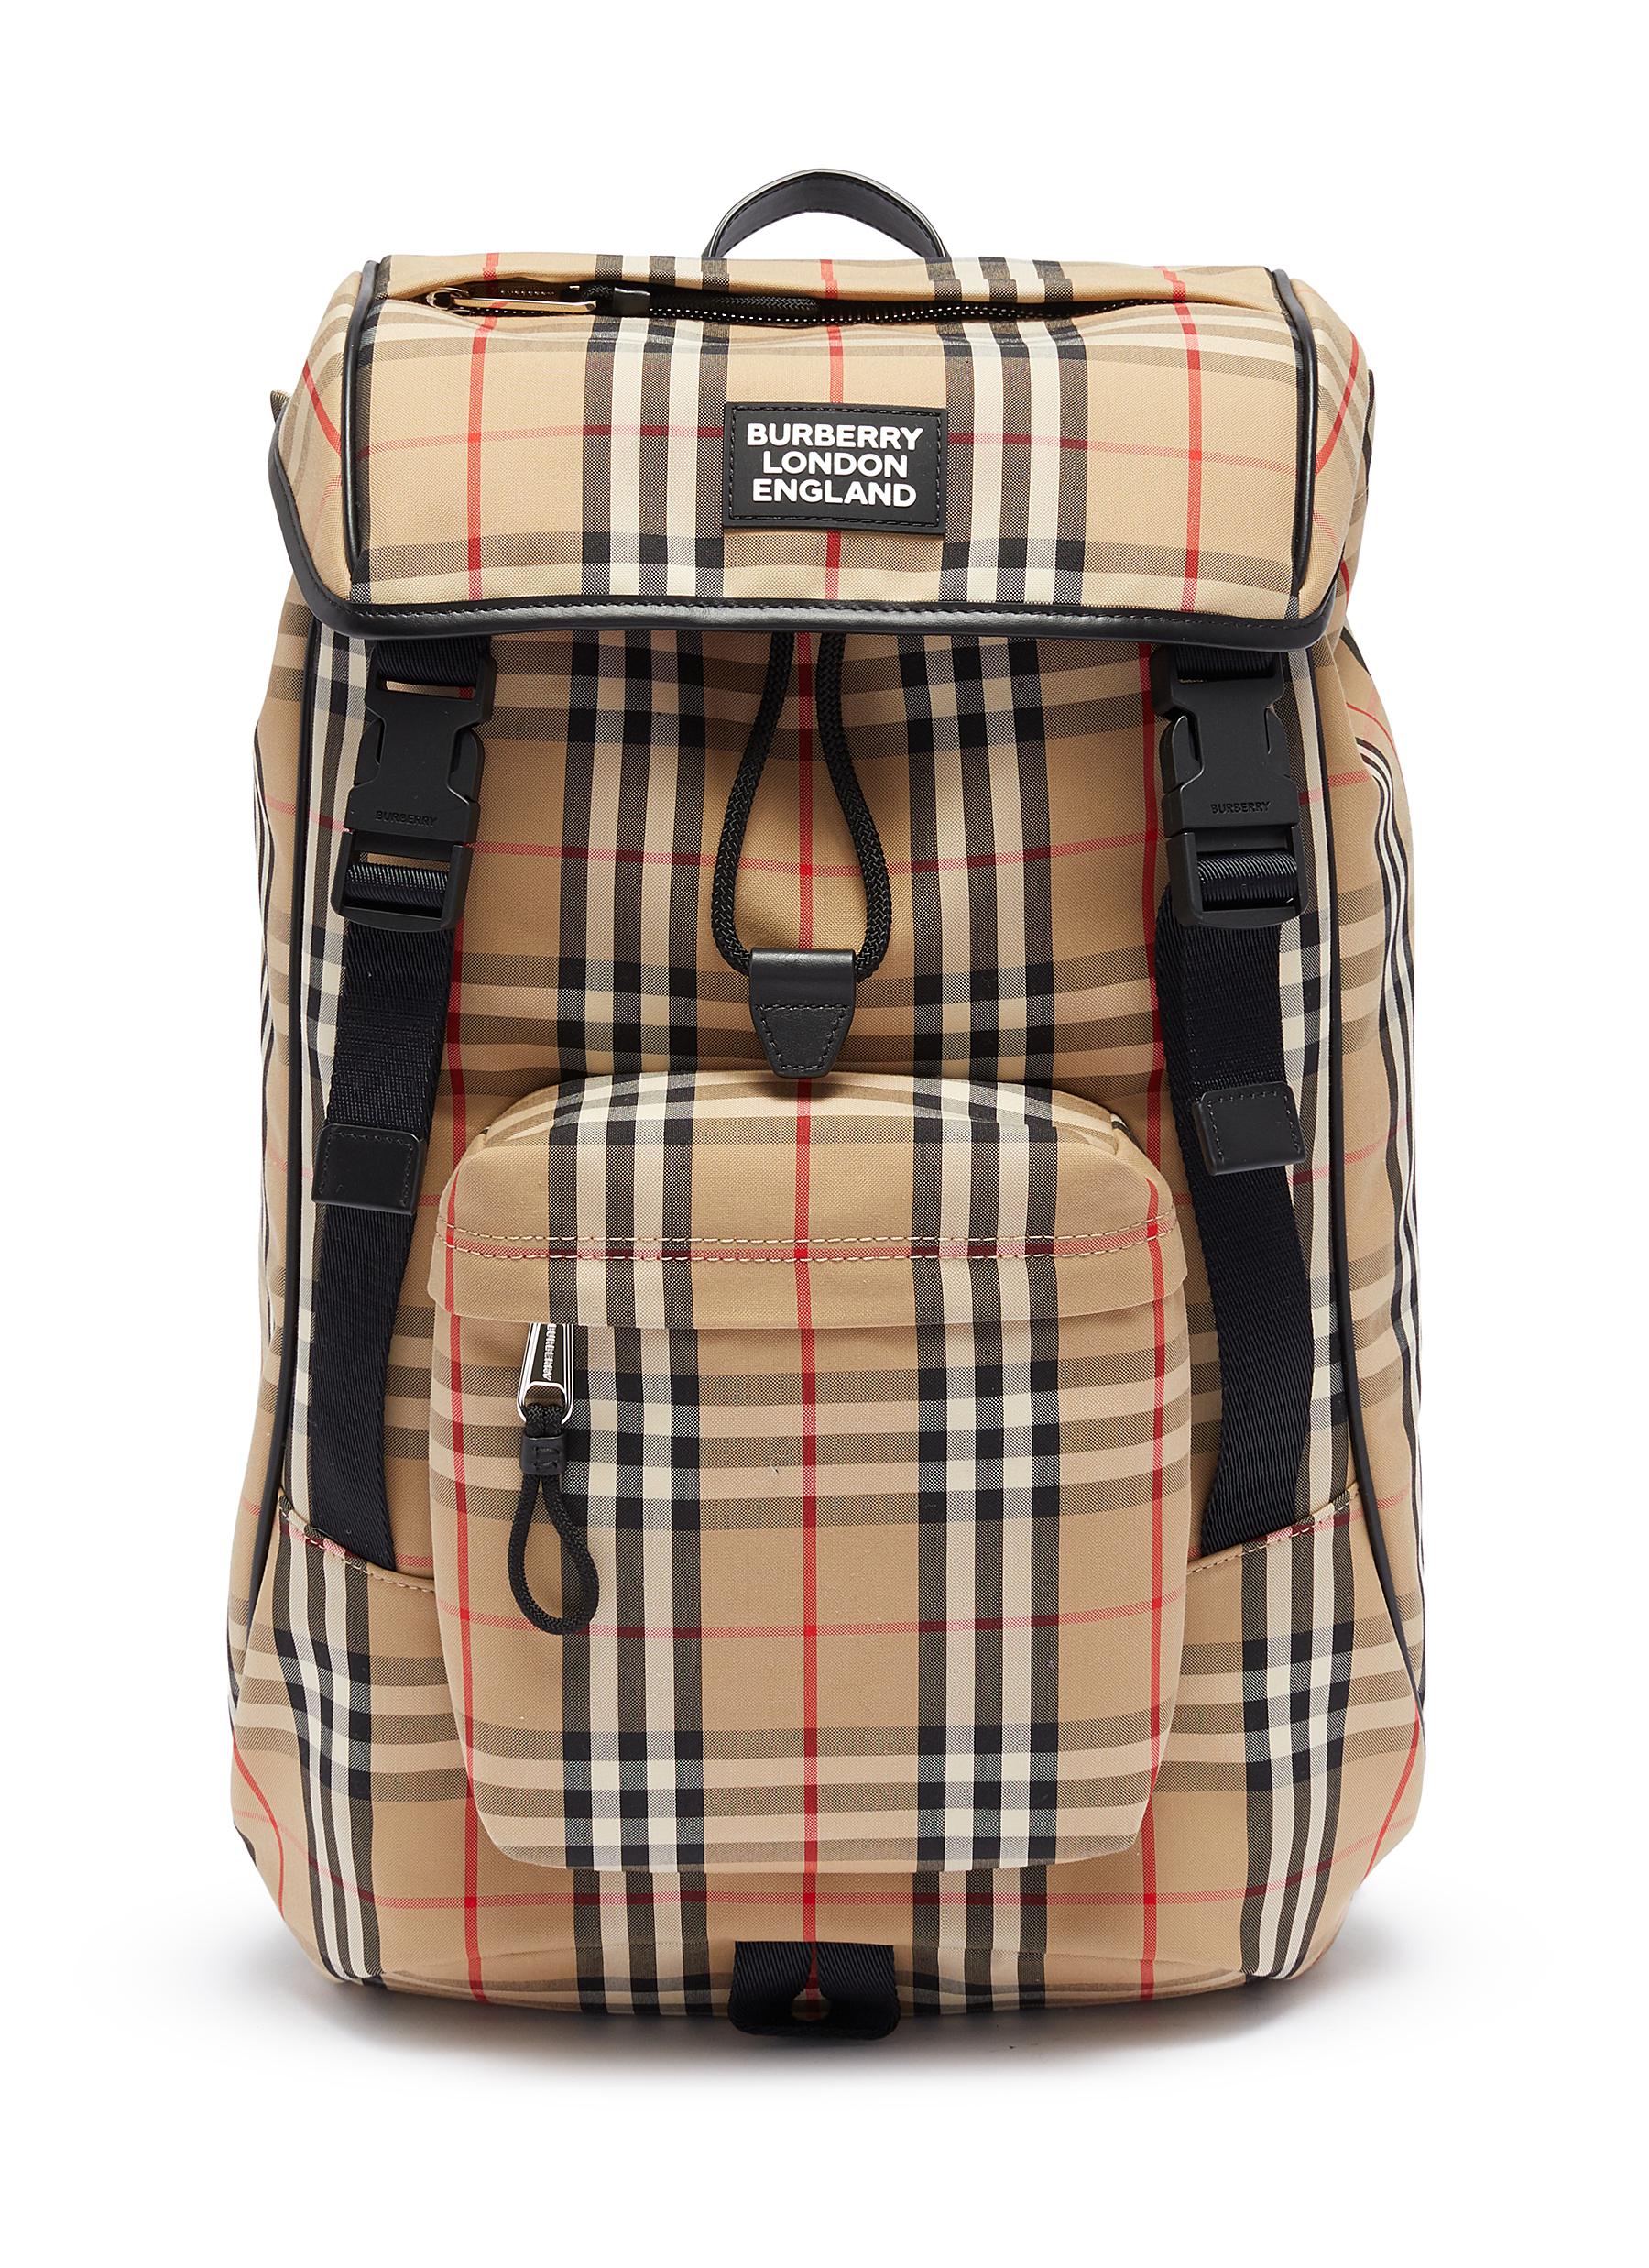 burberry vintage backpack